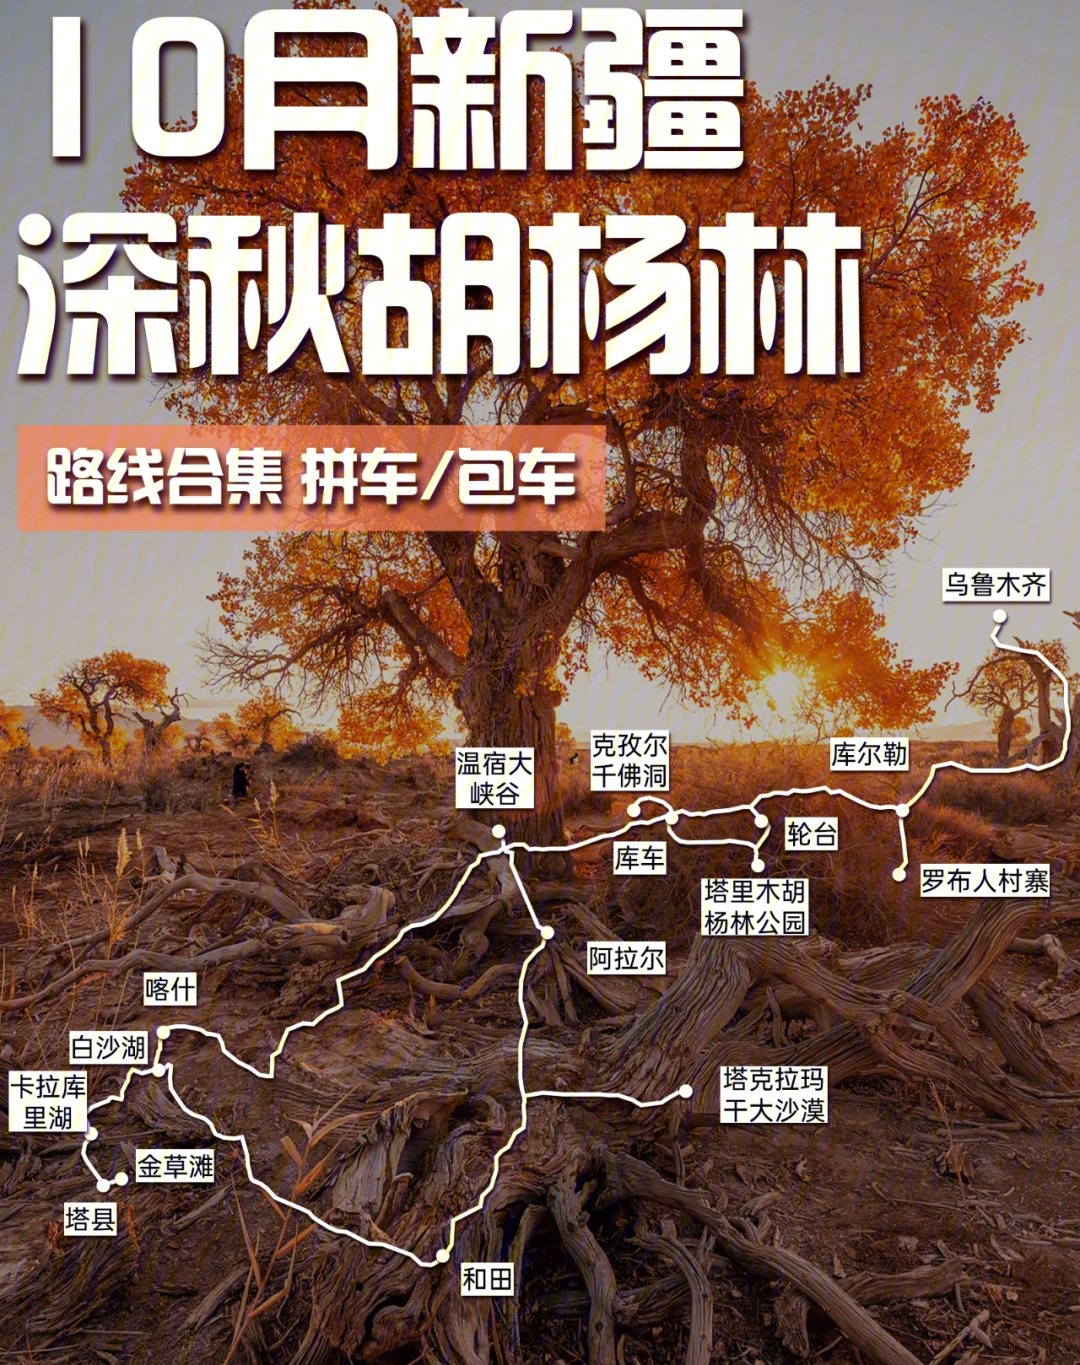 去新疆胡杨林旅游路线图片